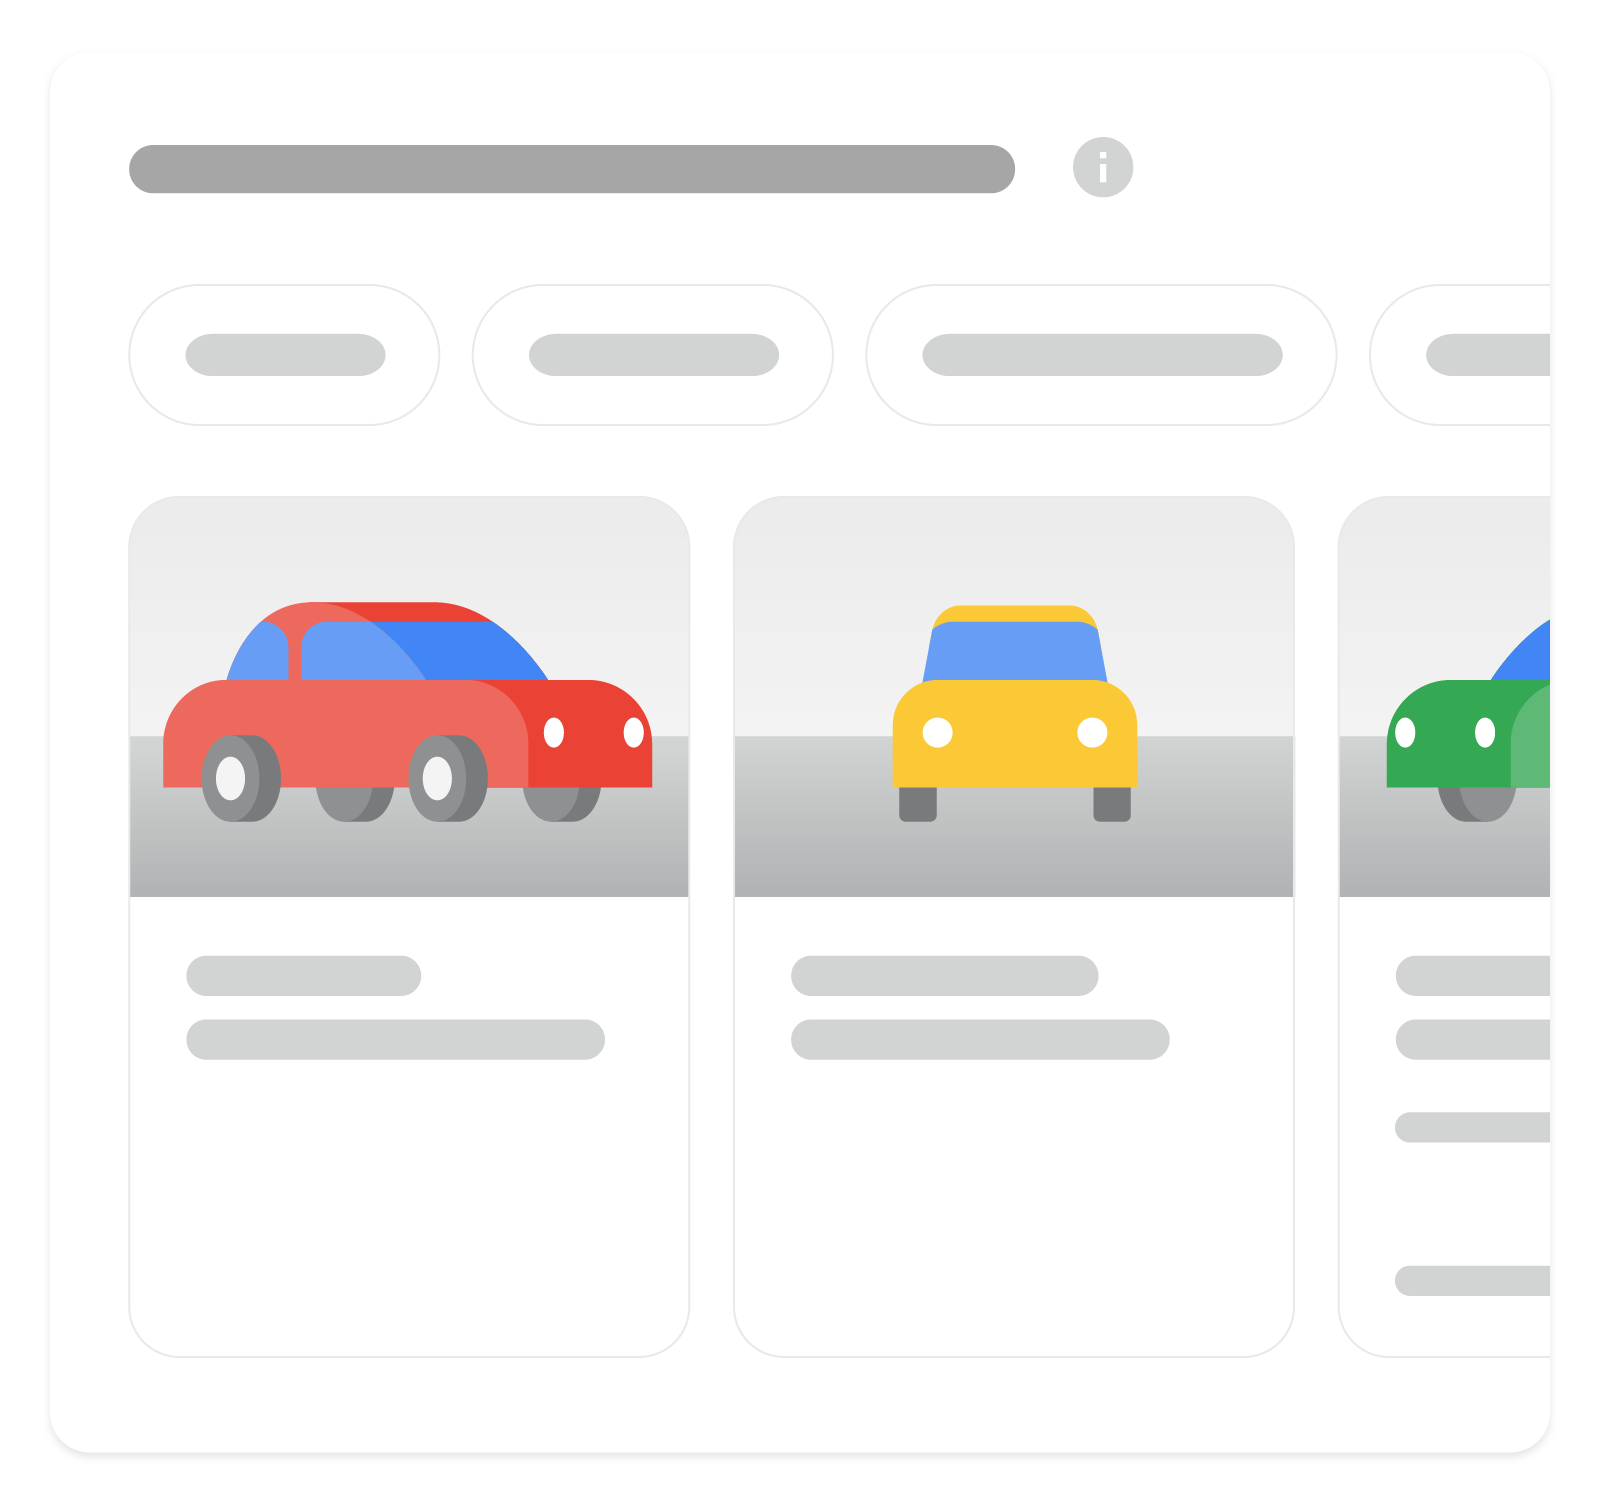 一张图片，展示了车辆商品详情富媒体搜索结果在 Google 搜索中的显示效果